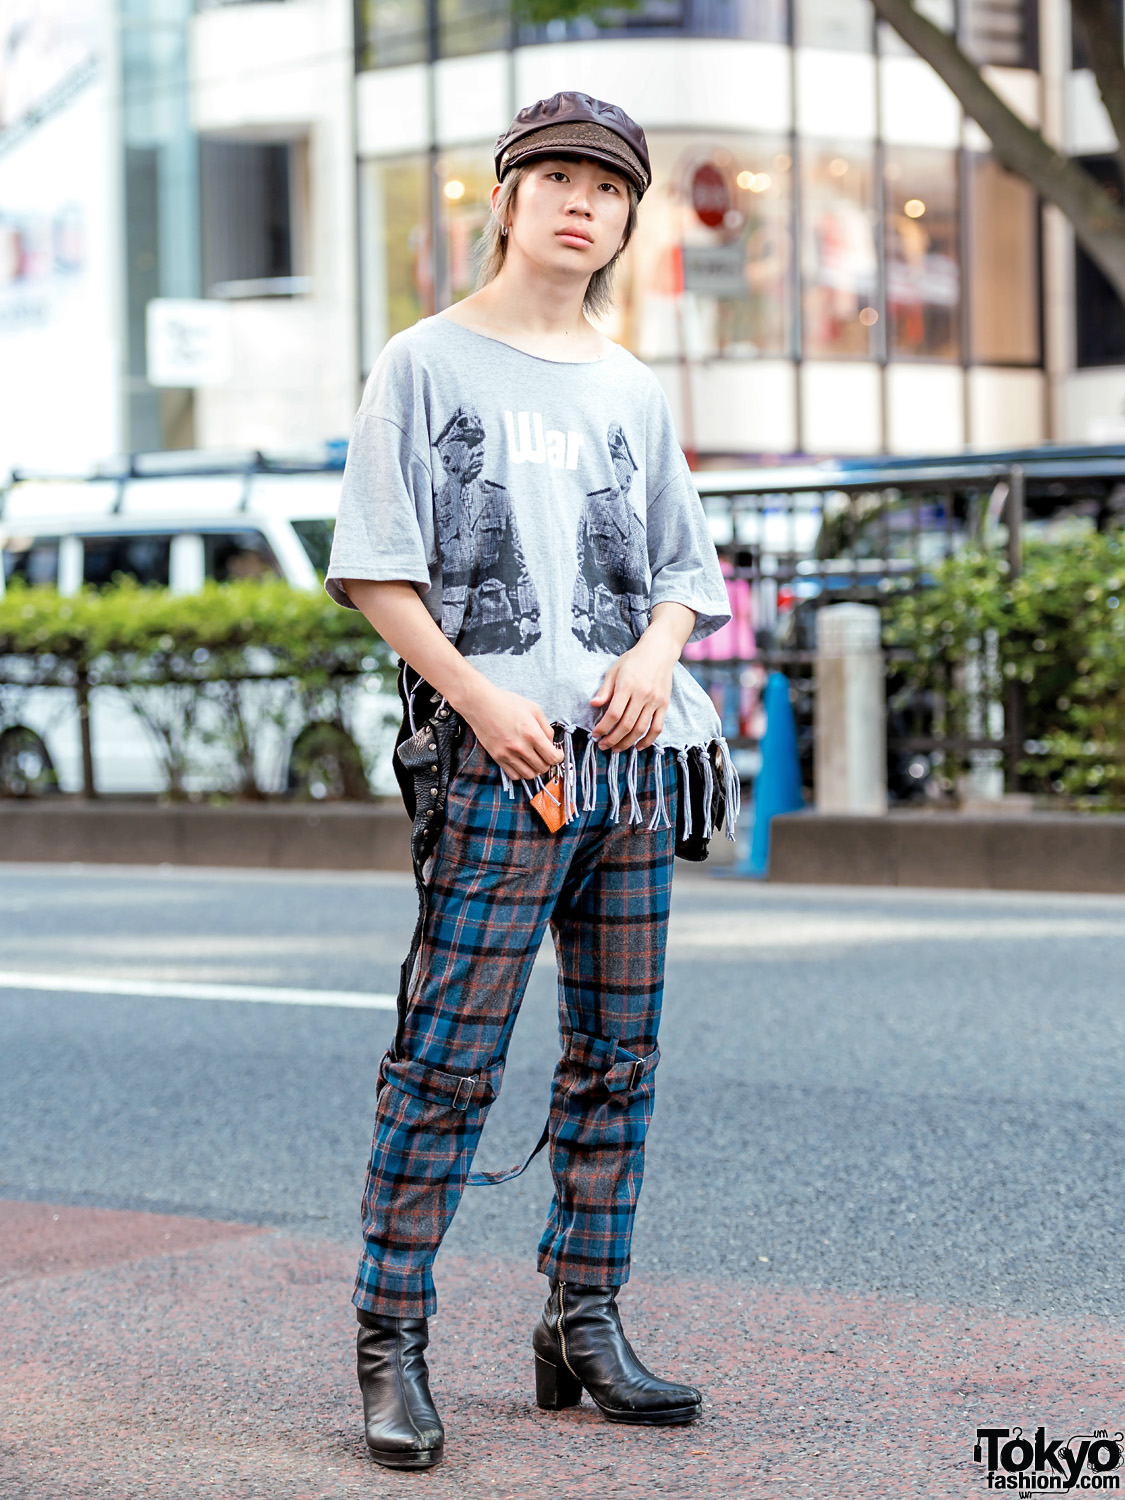 Harajuku Fringe & Plaid Street Style w/ Banal Chic Bizarre